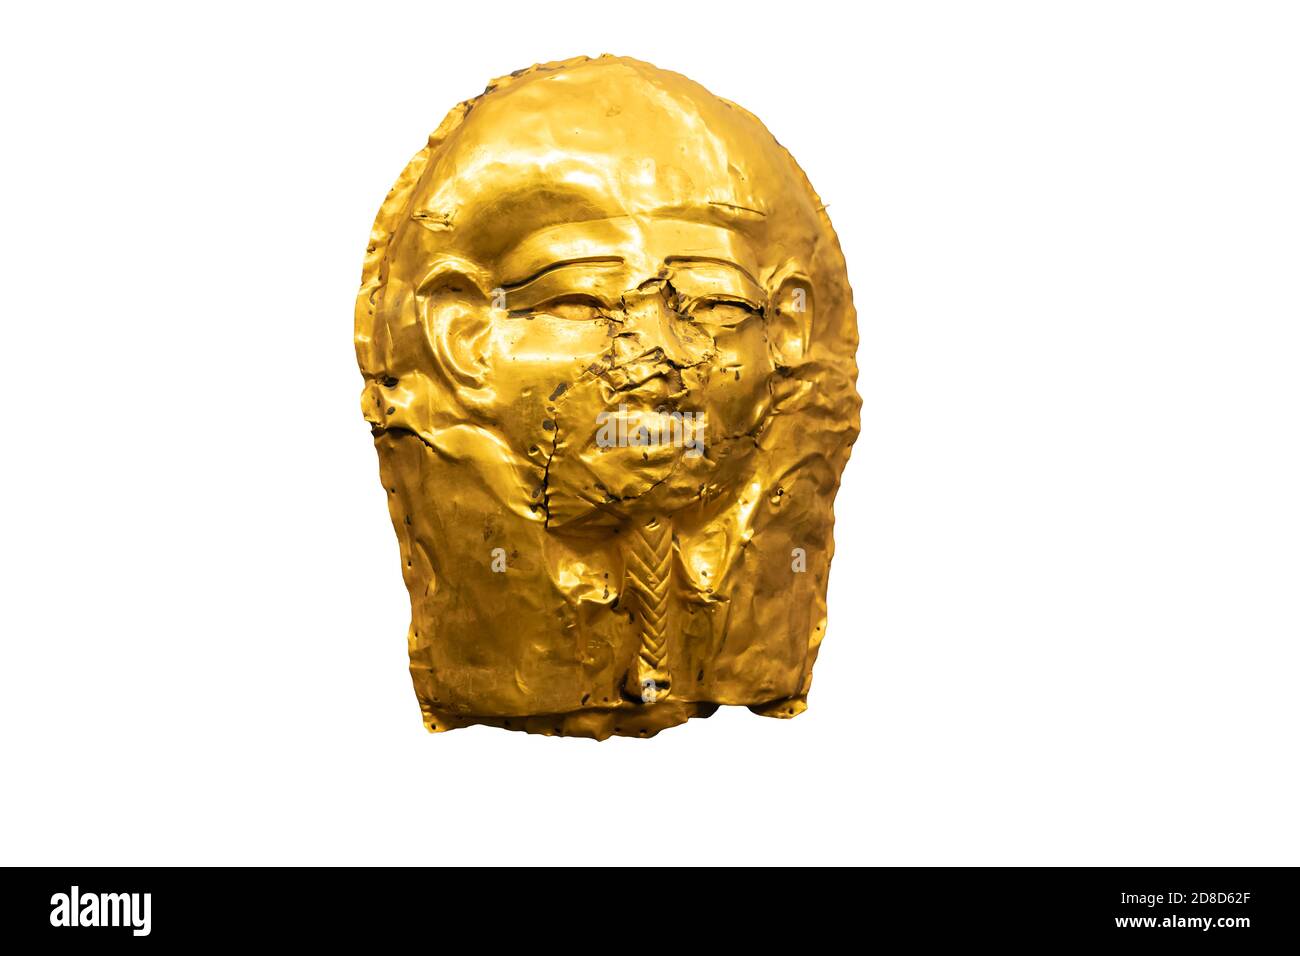 Masque égyptien doré, isolé sur fond blanc Banque D'Images